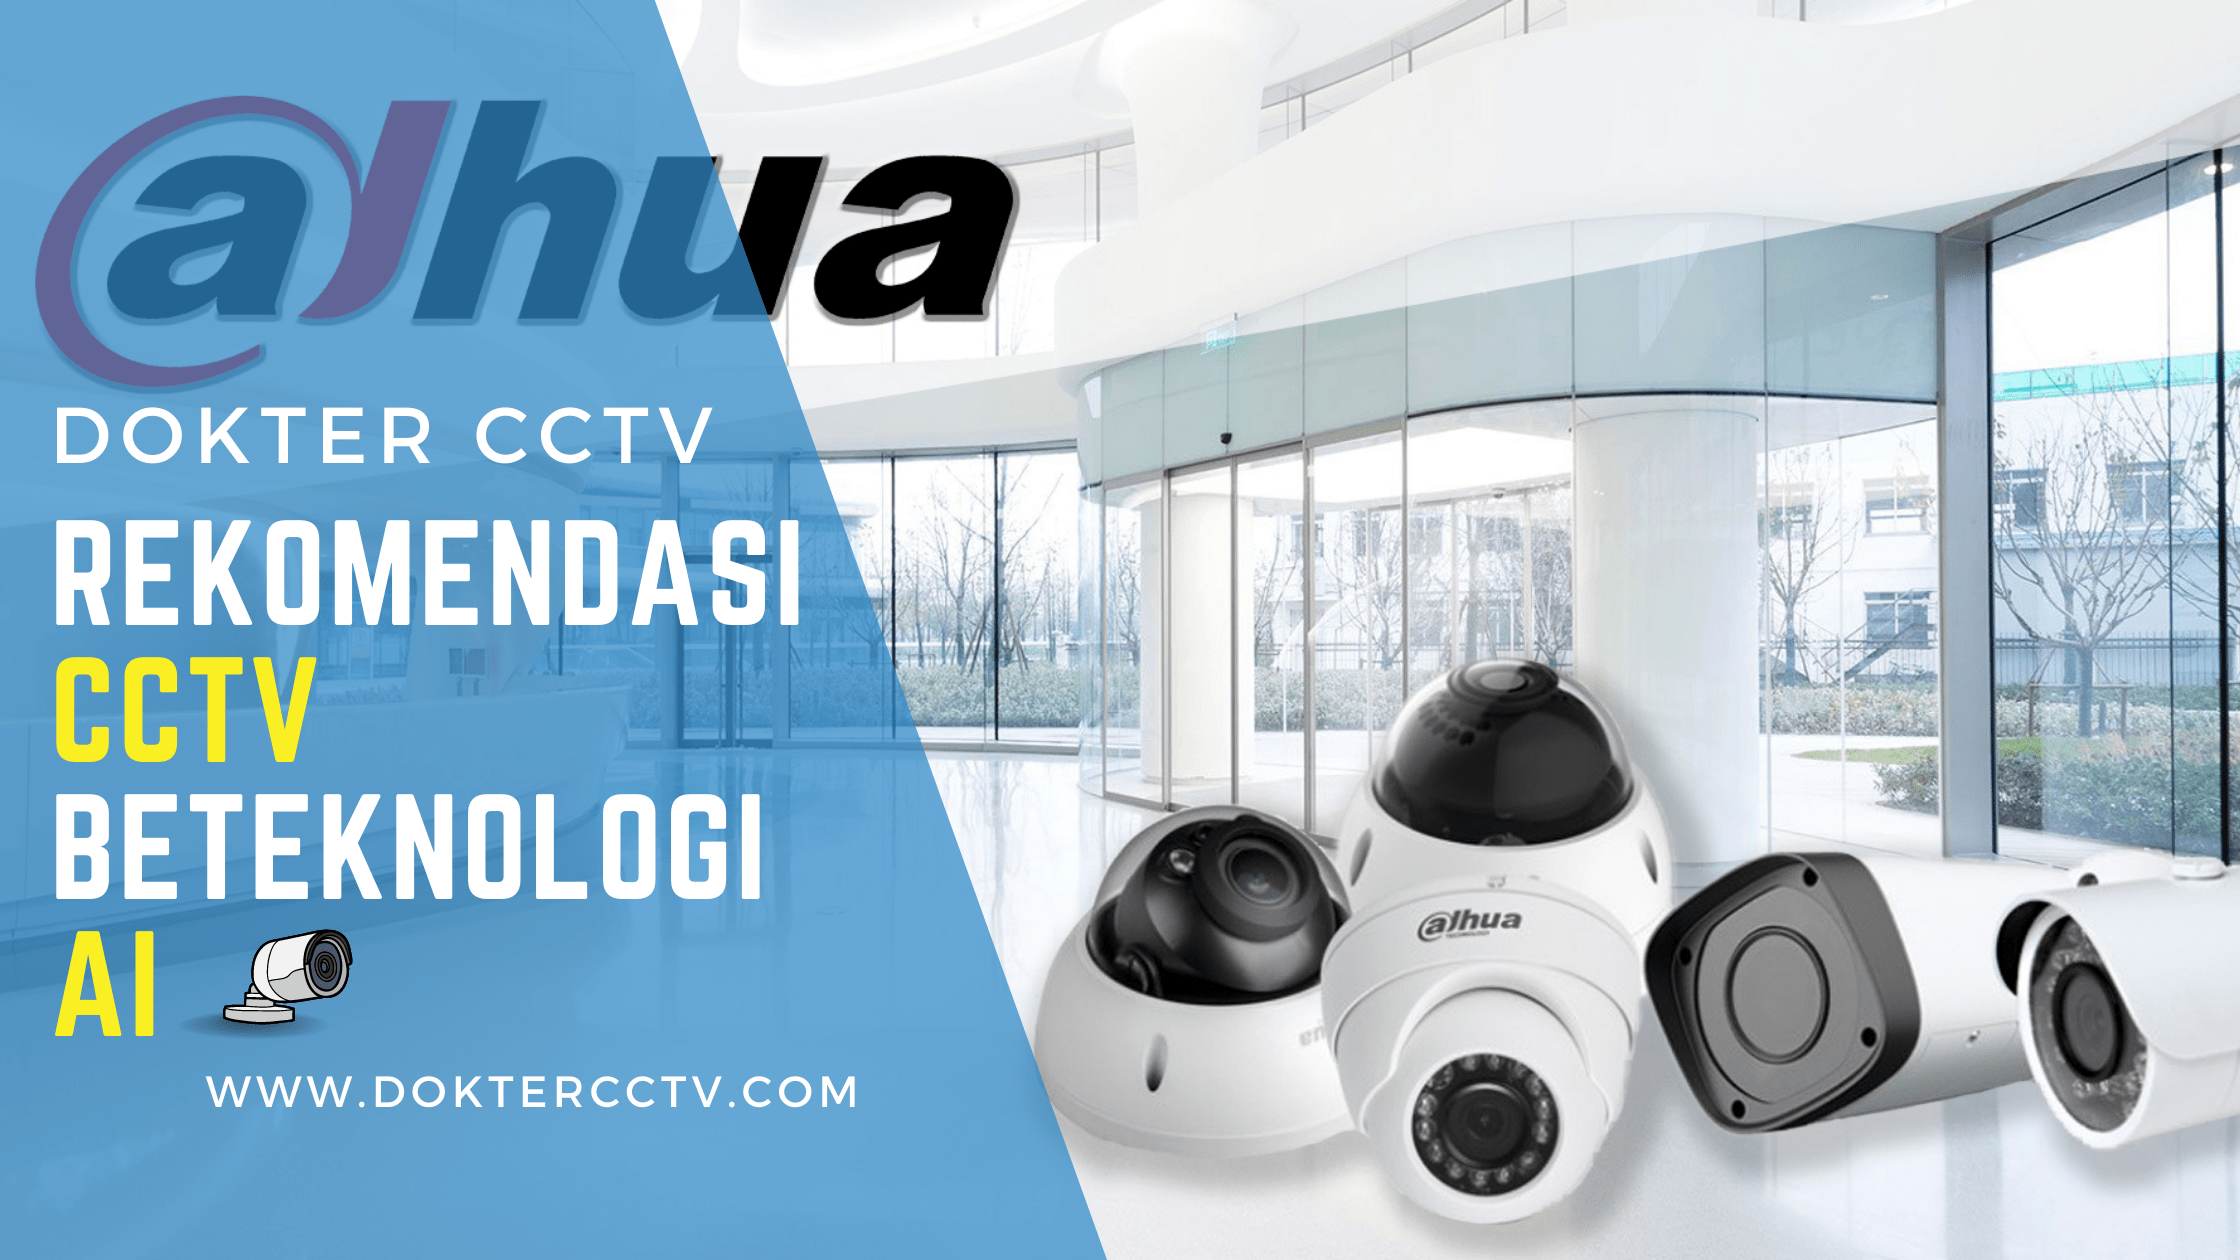 Rekomendaasi CCTV Berteknologi AI